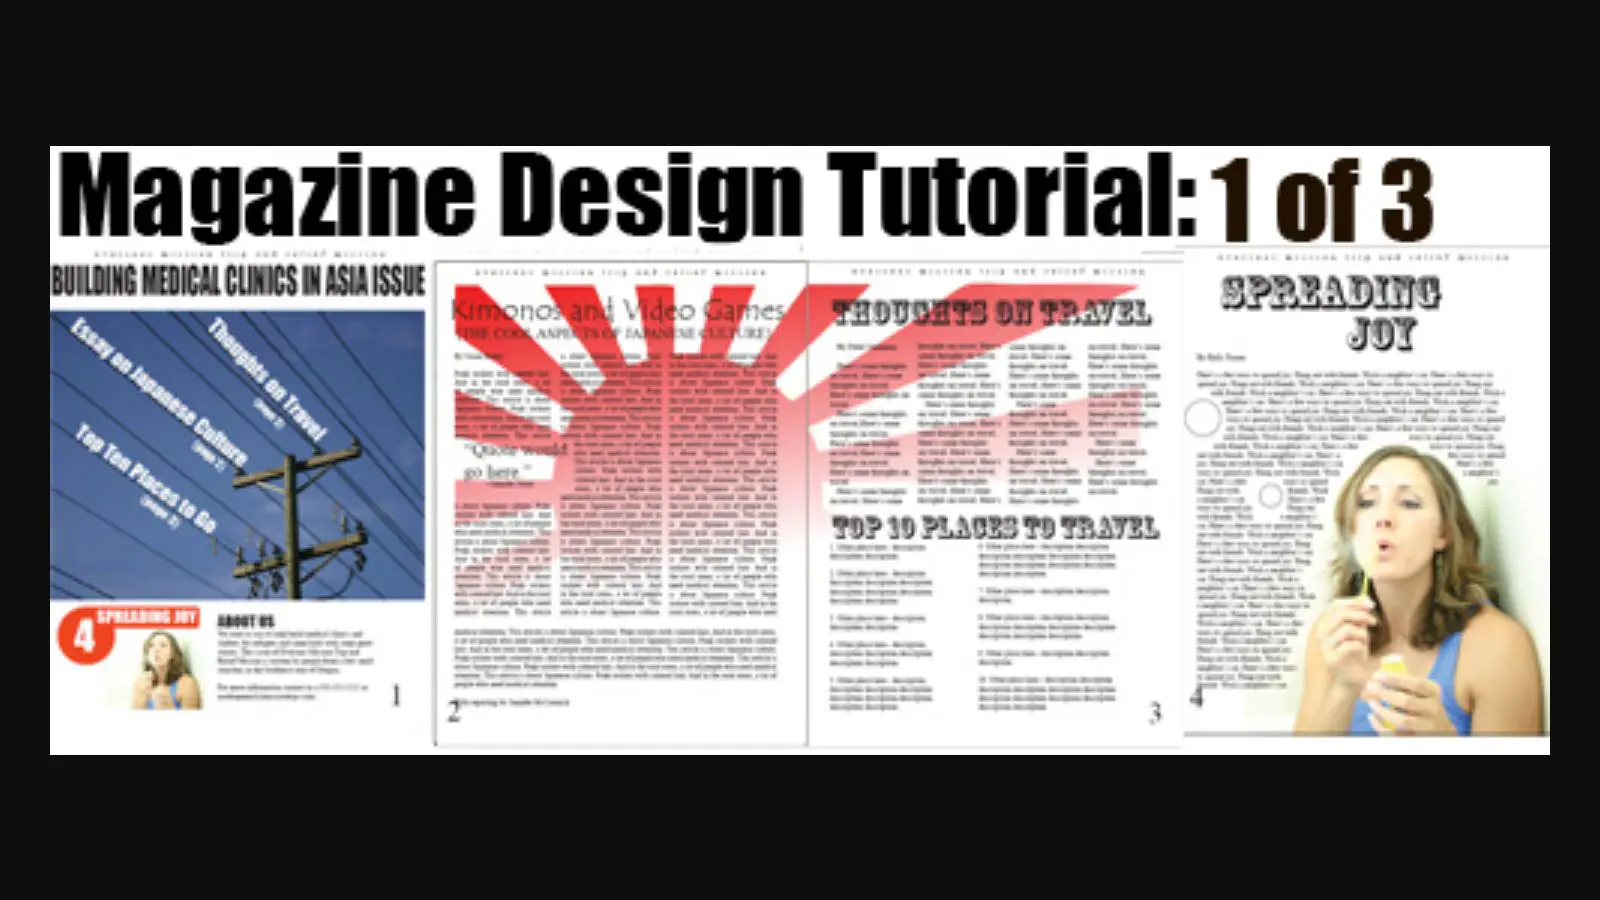 Captura de tela do tutorial do design da revista.